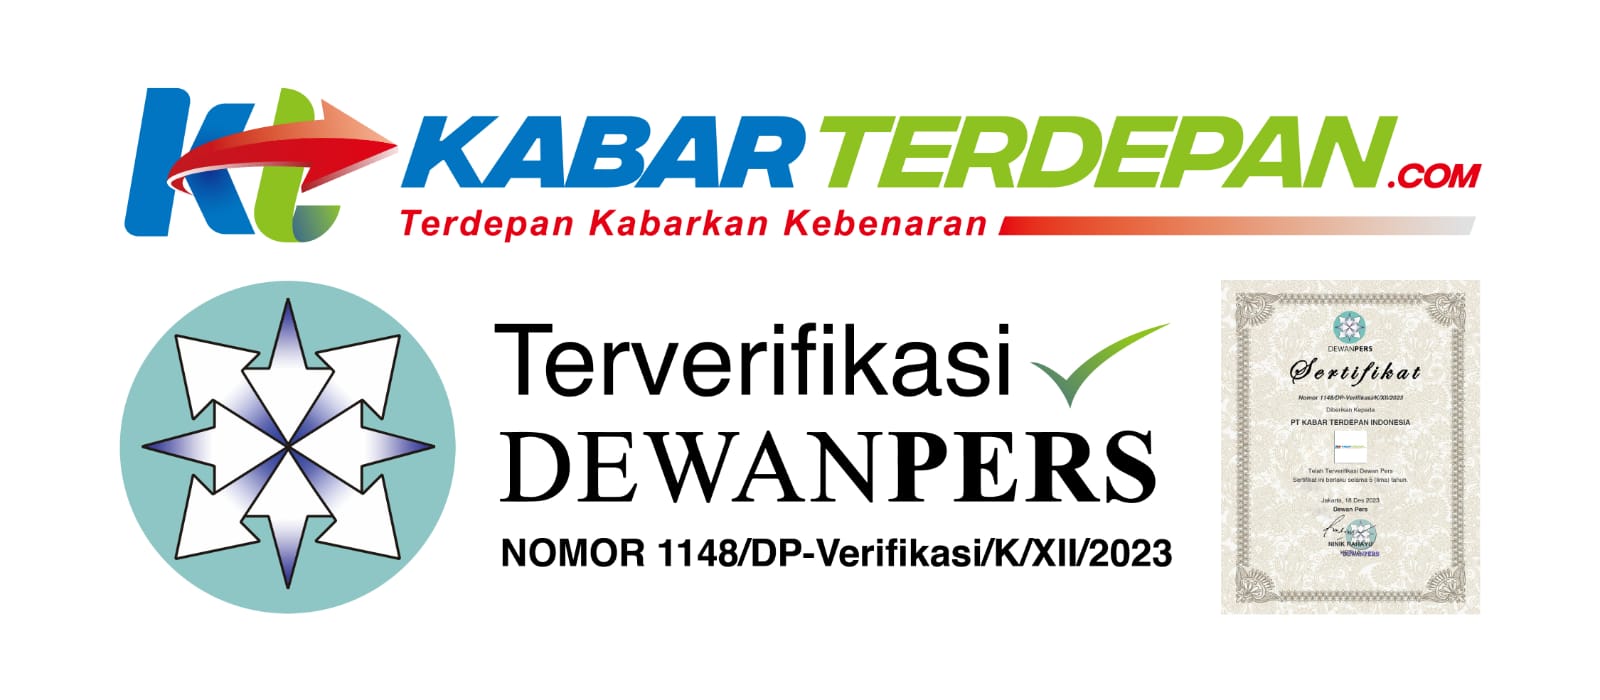 Kabarterdepan.com, media siber pertama di Kota Mojokerto yang terverifikasi administrasi dan faktual Dewan Pers